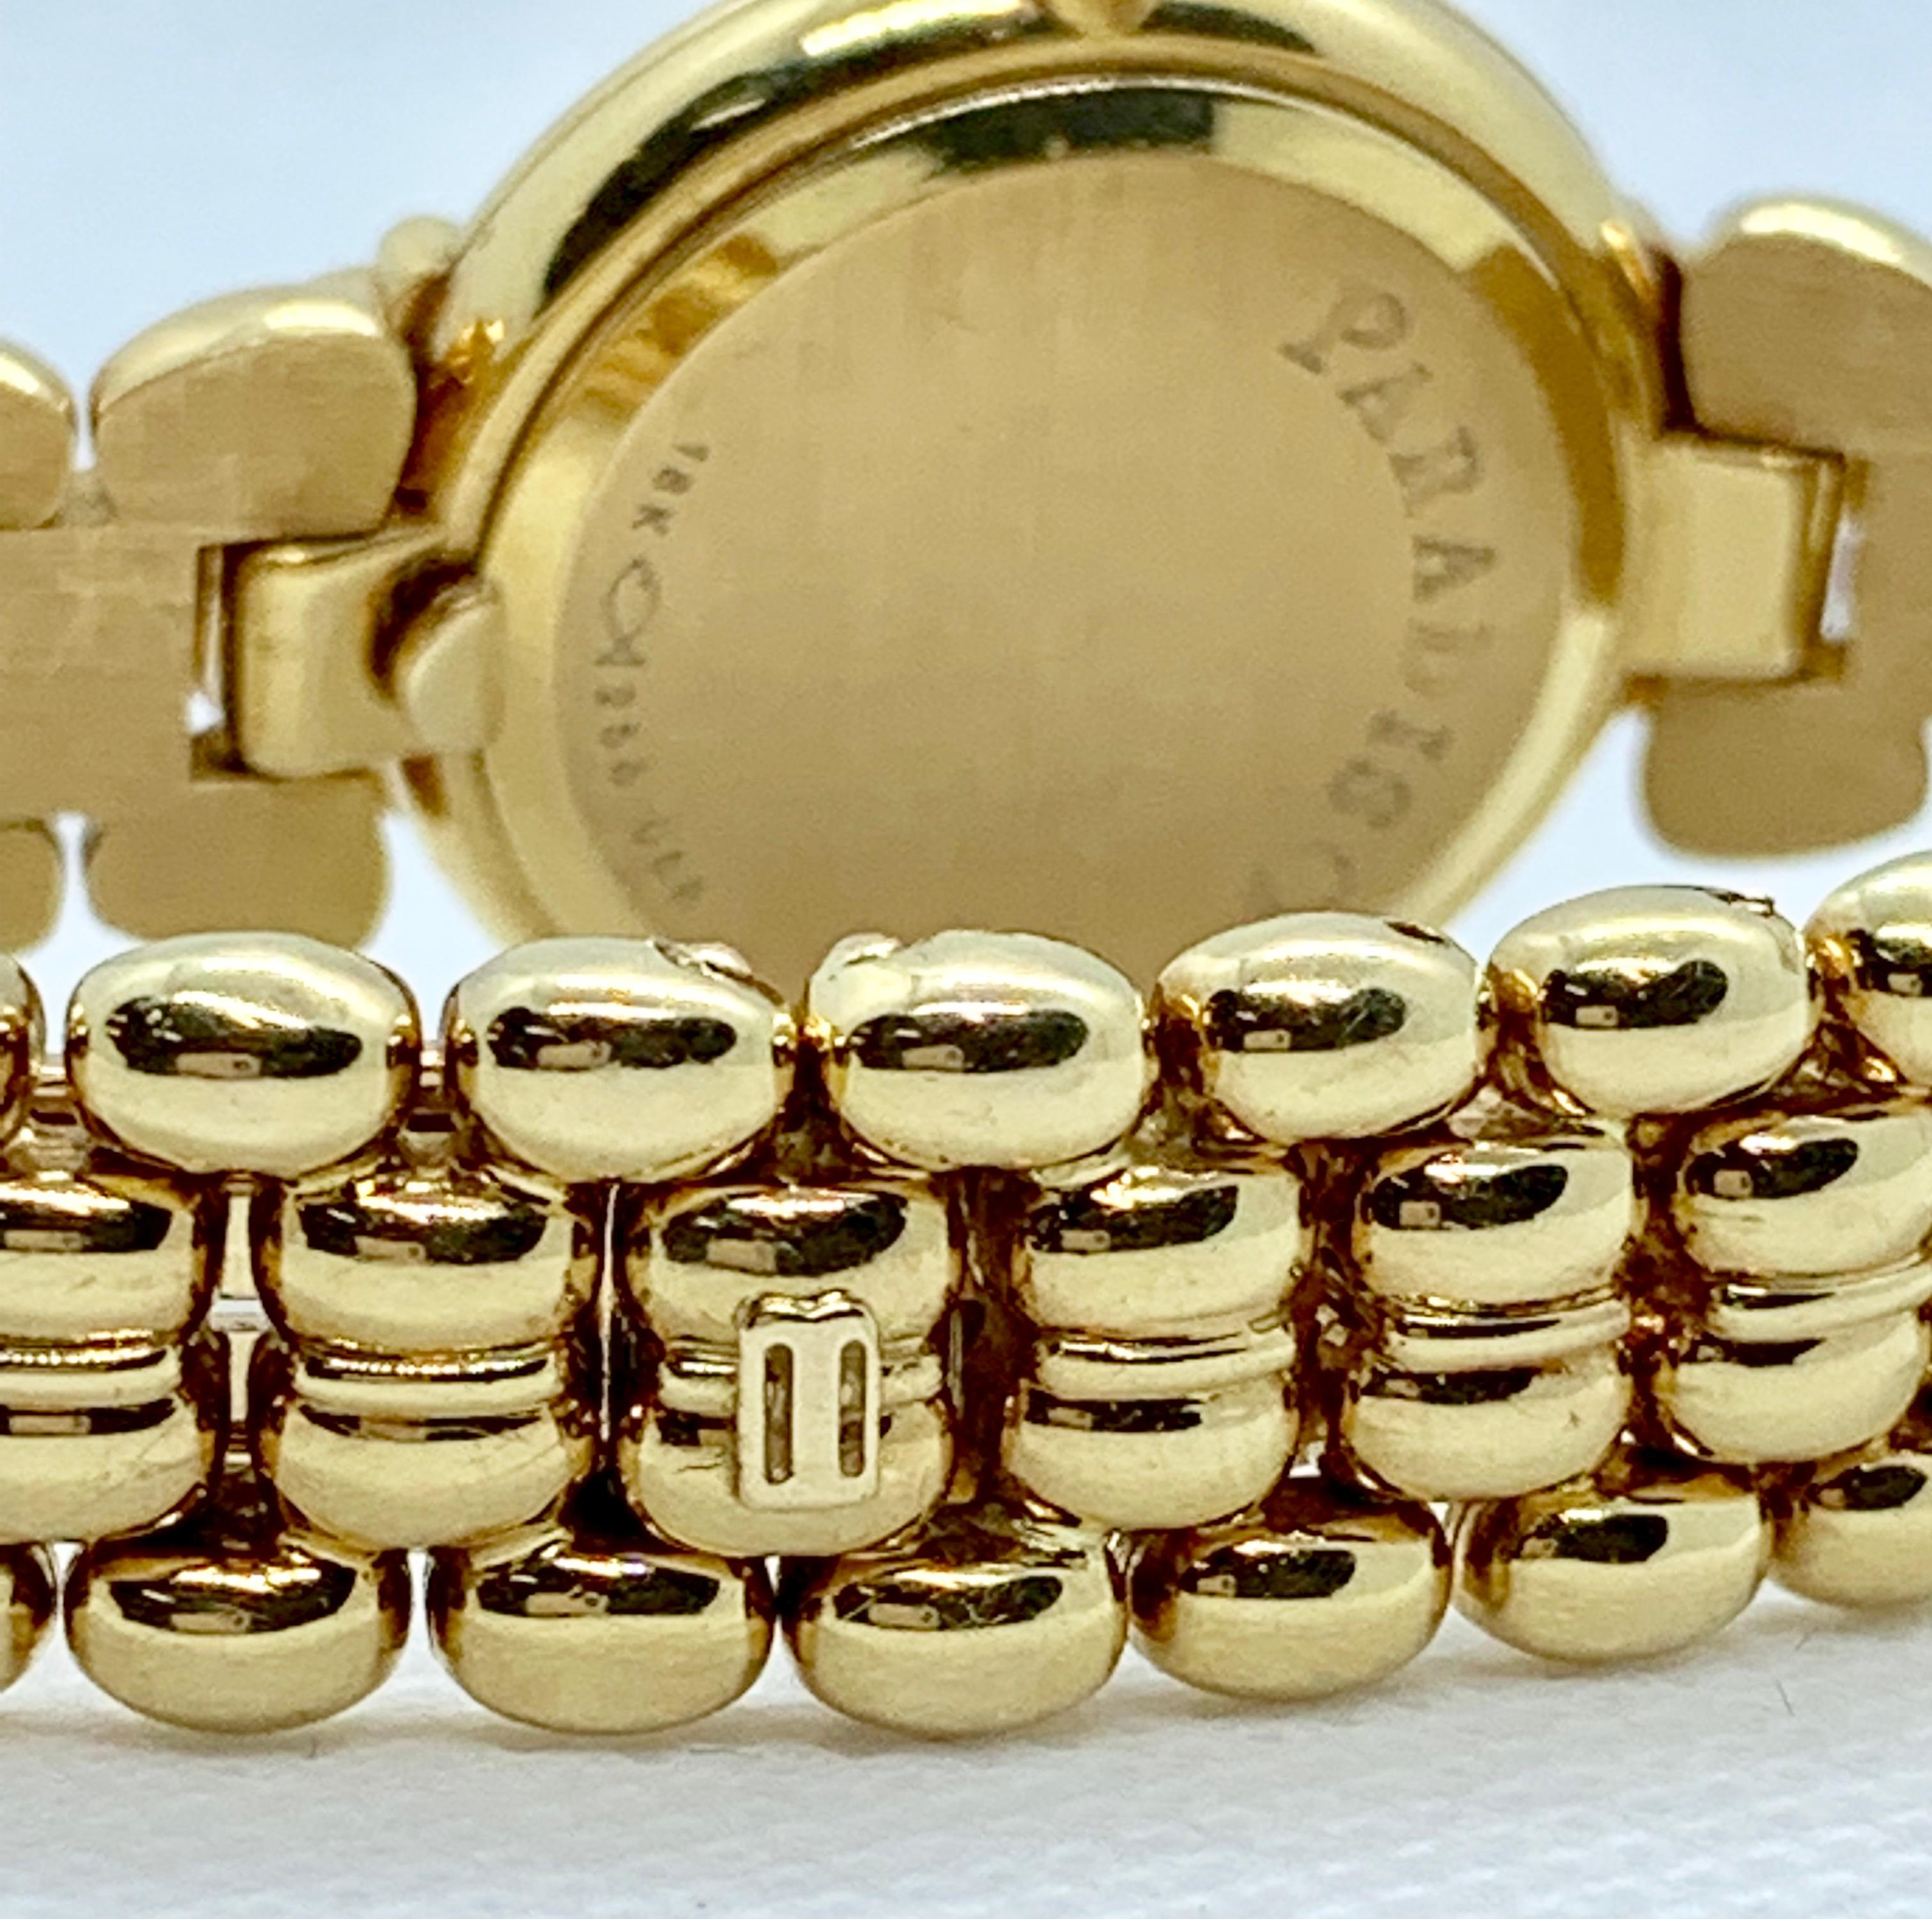 Magnifique montre Bucherer Paradiso 28mm pour femmes. Cette pièce est en or jaune 18 carats et comporte 47 diamants brillants et deux saphirs de forme triangulaire, taillés en cabochon. Le poids estimé du diamant est de 0,80 carat de couleur F-G et